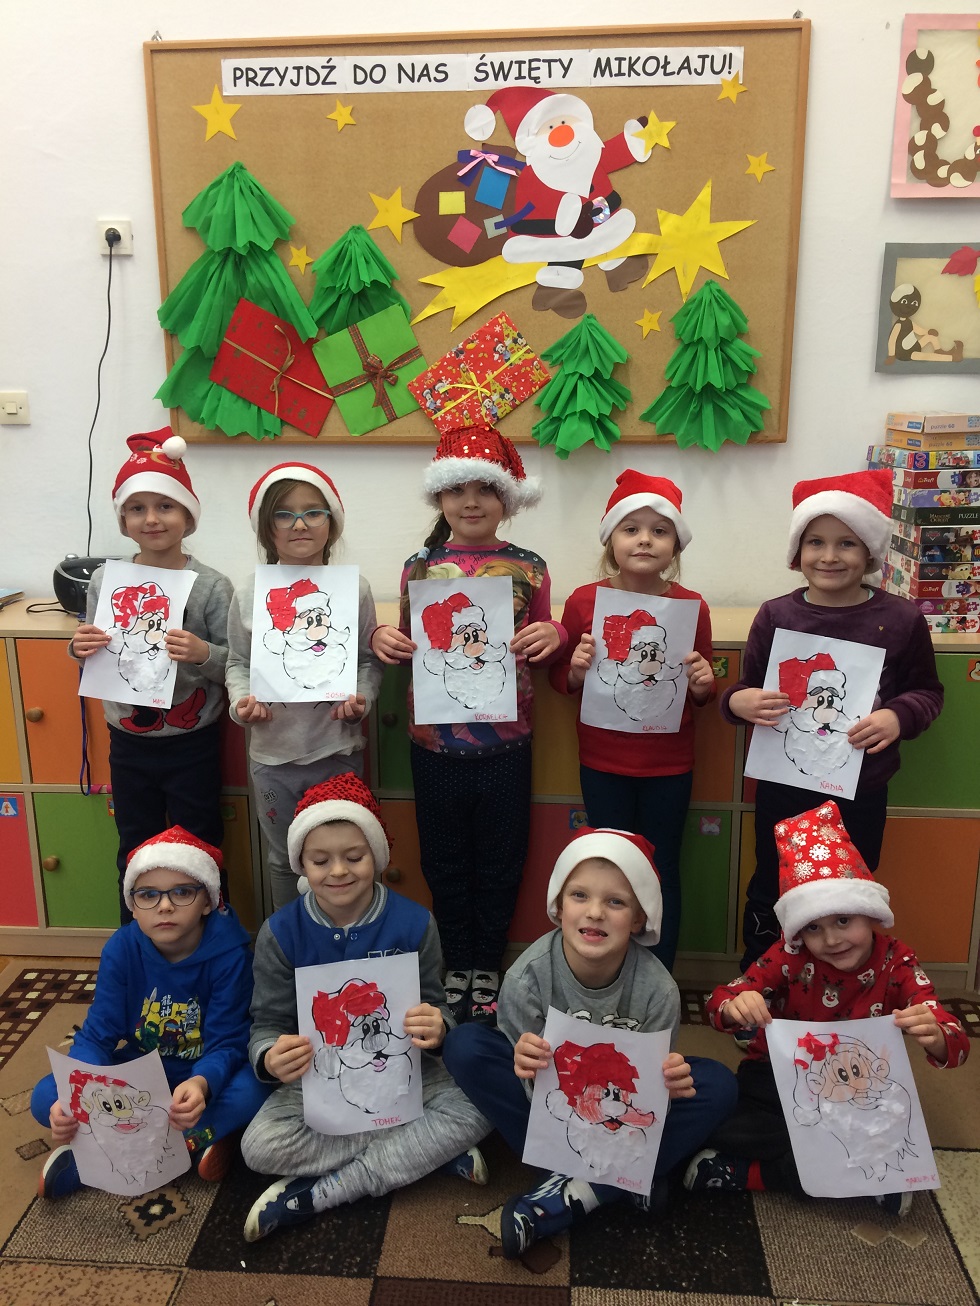  Dzieci prezentują portret Św. Mikołaja